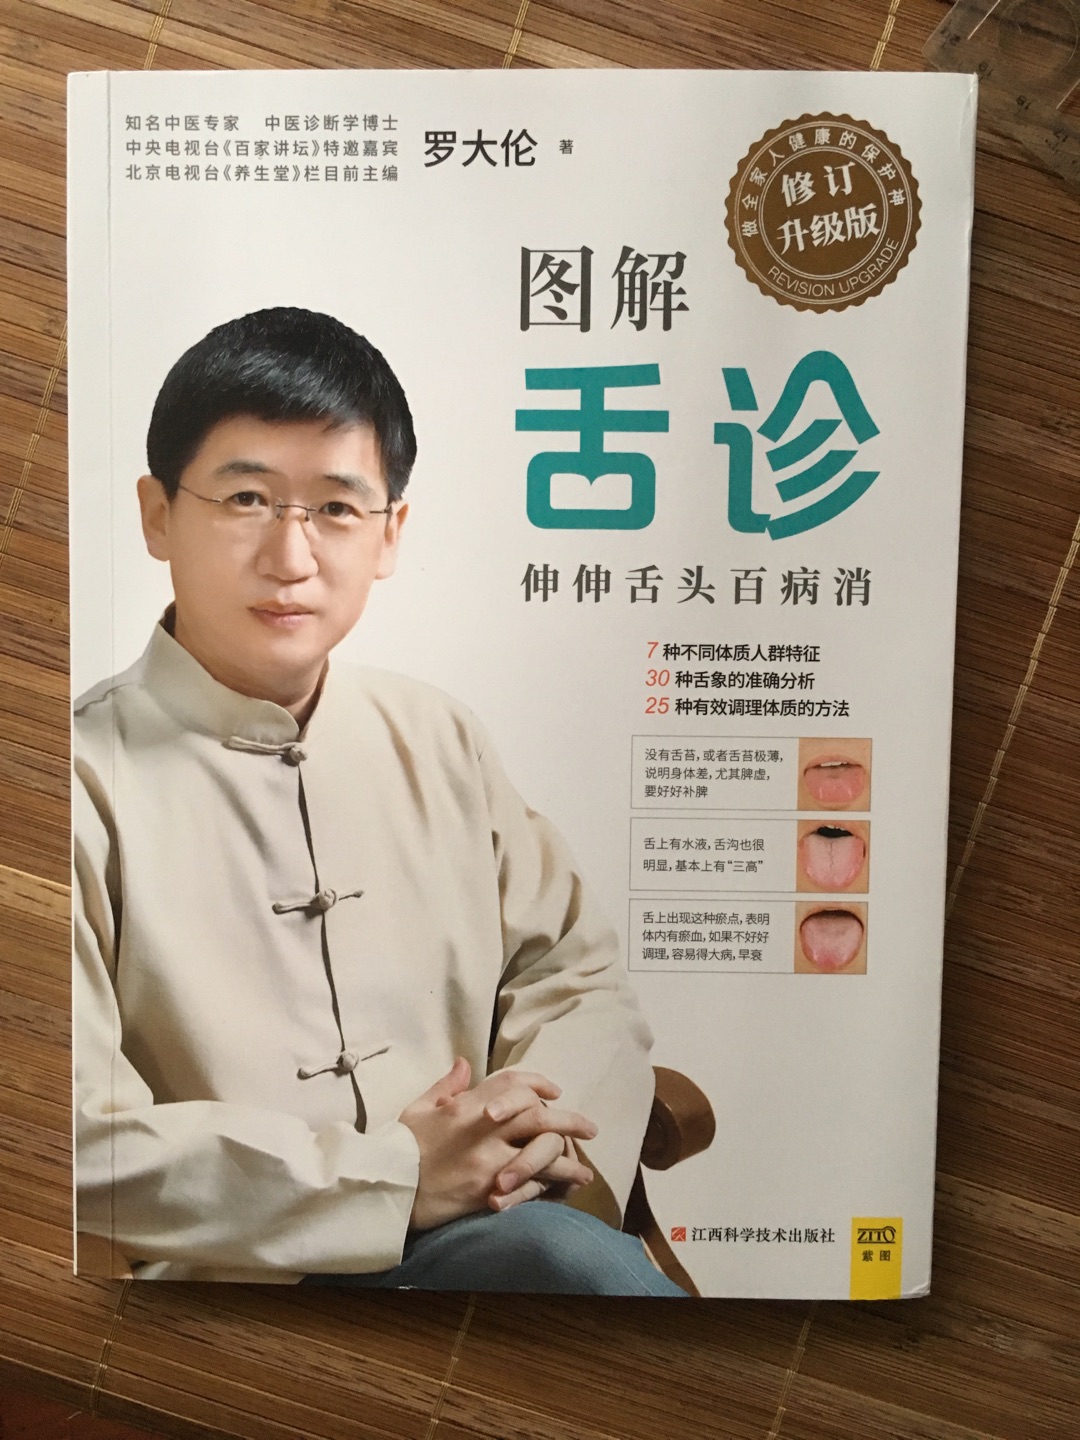 至今少有的一本中医常识书，对稍有兴趣的普通百姓非常有用。